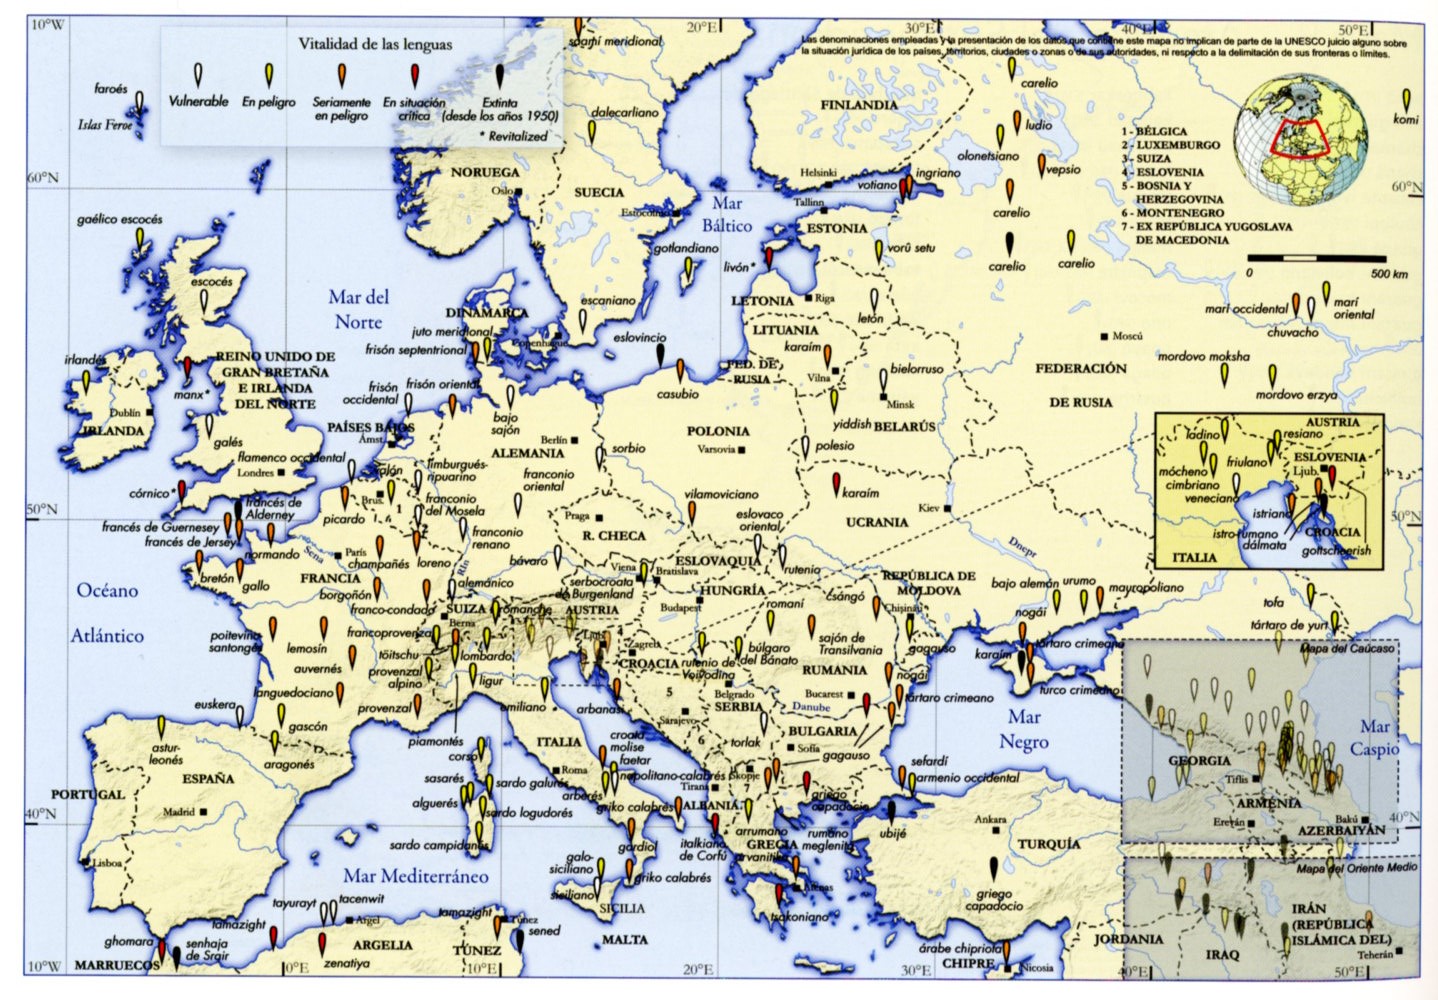 Mapa de las lenguas en peligro de Europa. Del Atlas de las lenguas del mundo en peligro, 2ª edición, París, UNESCO, 2010. p.25